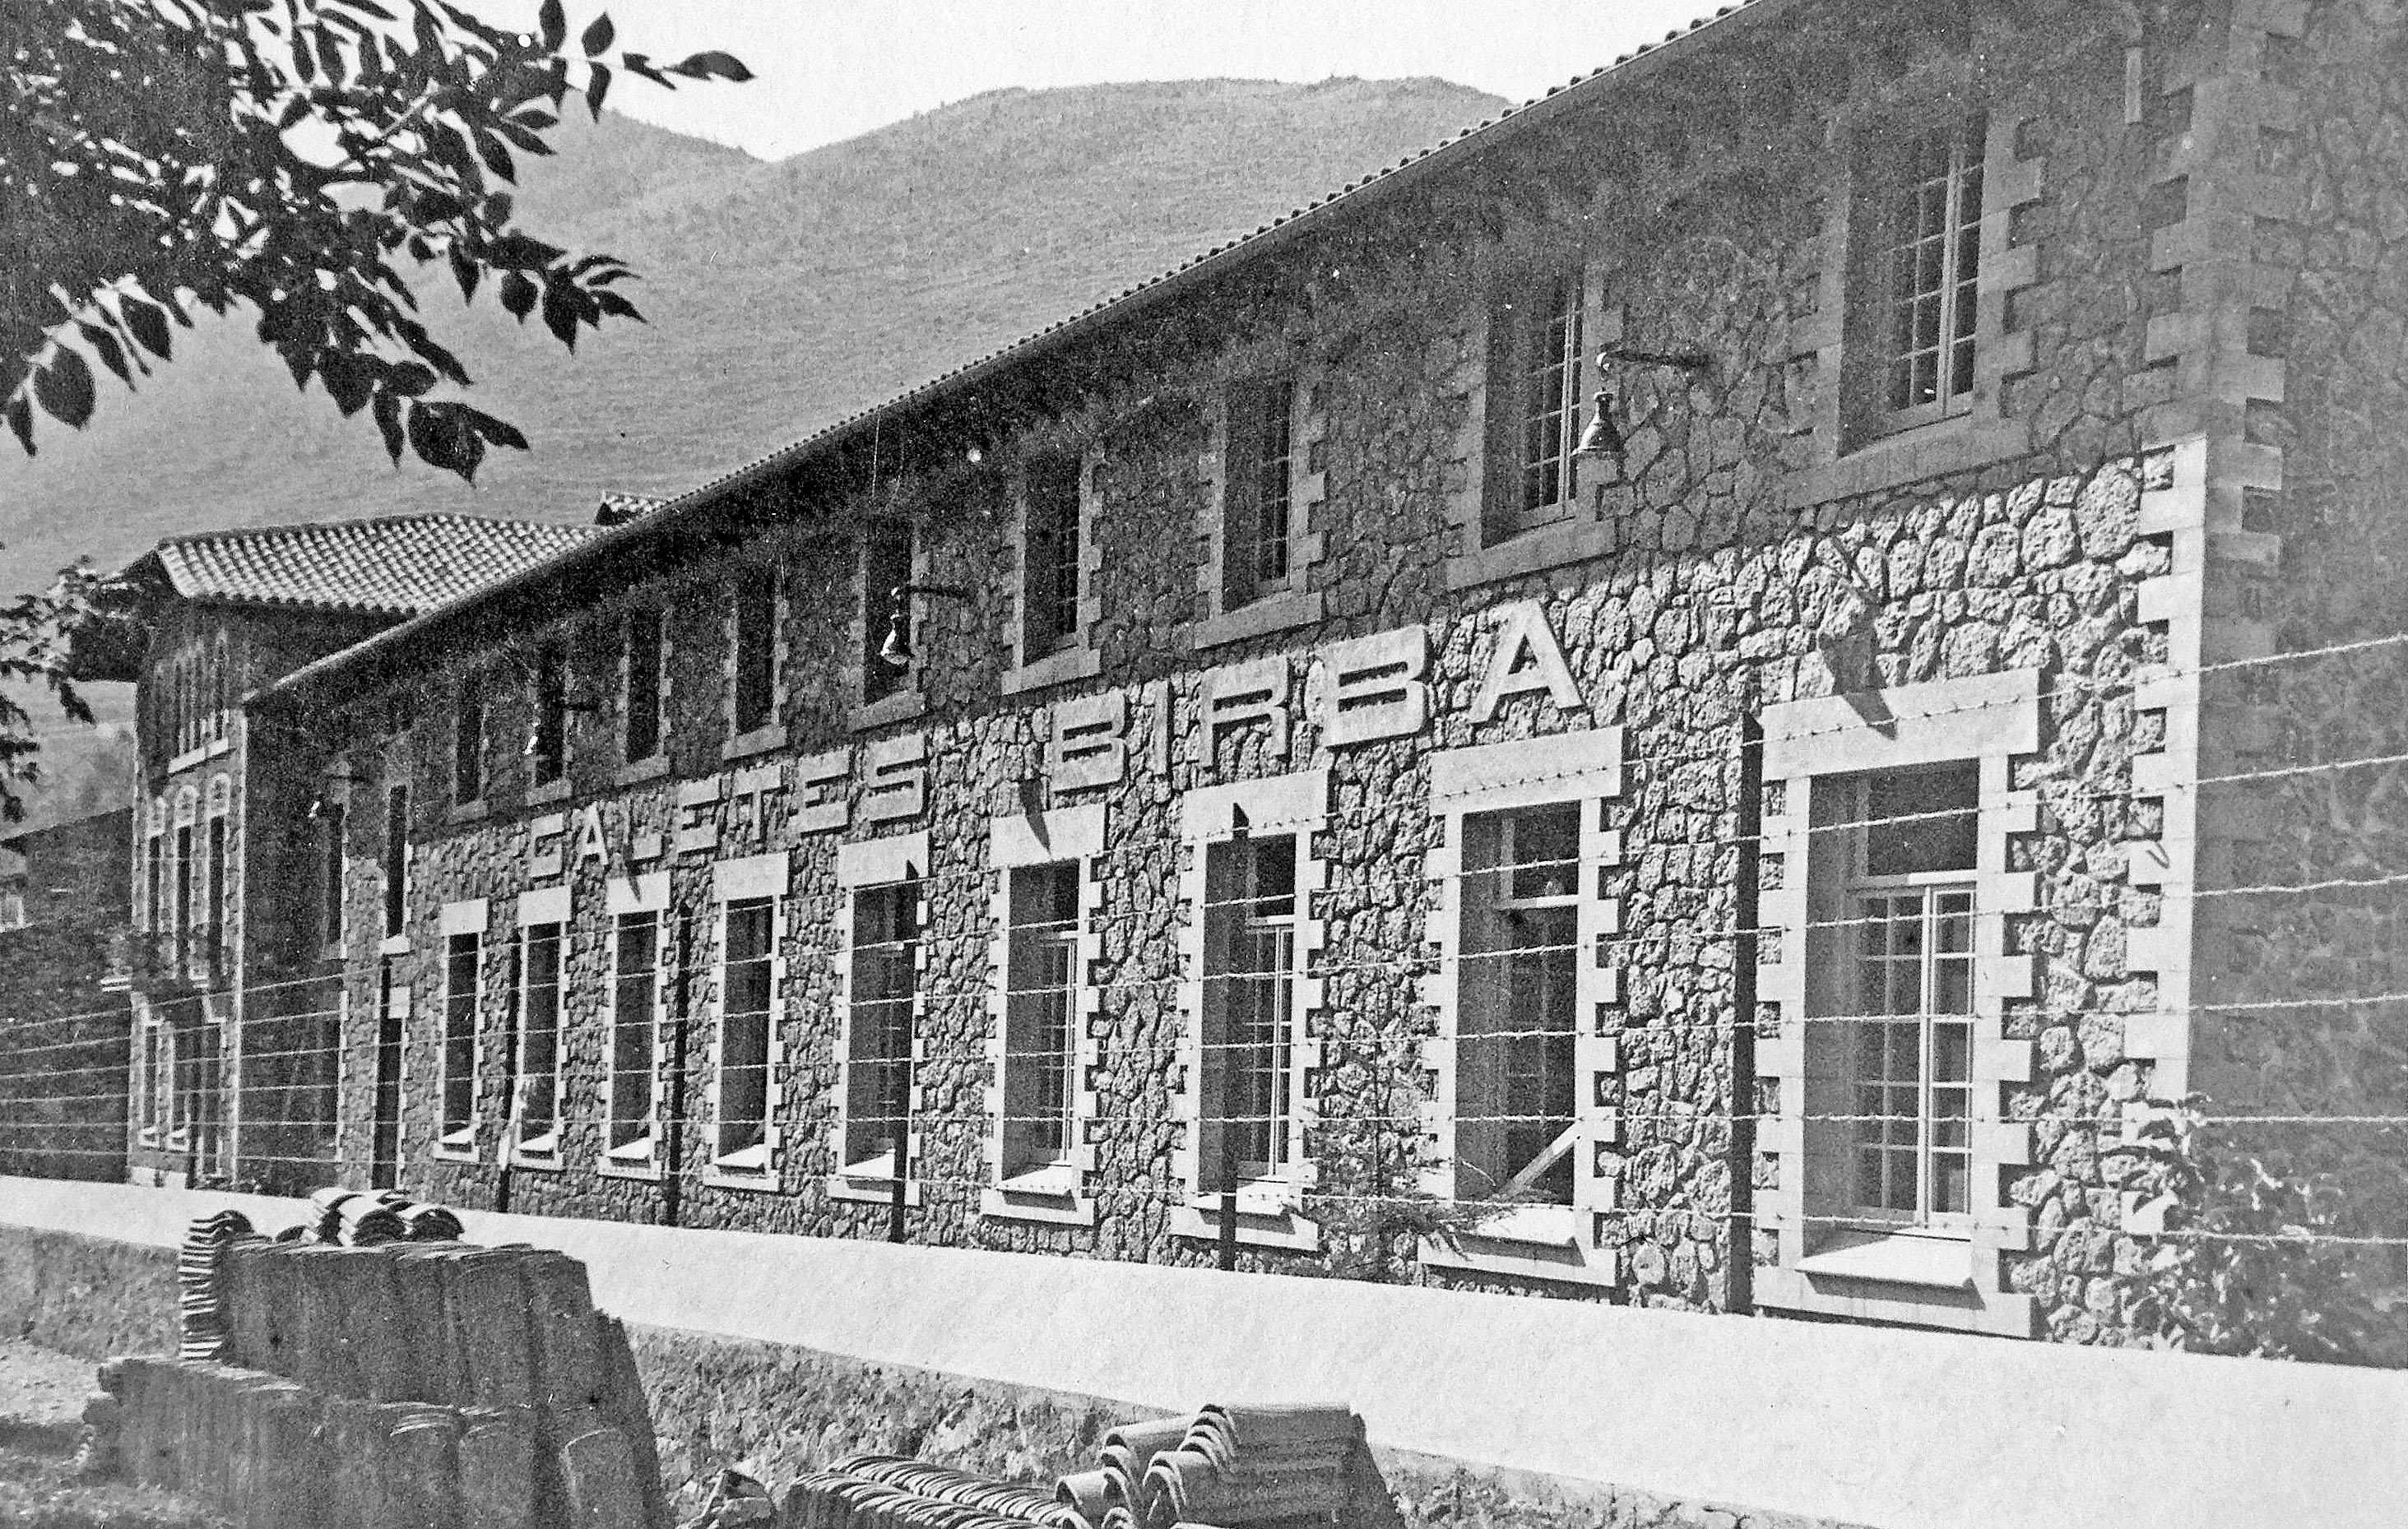 La fàbrica de Galetes Birba l’any 1929, quan es va inaugurar. L’edifici es conserva, encara que en l’actualitat els arbres en tapen la façana